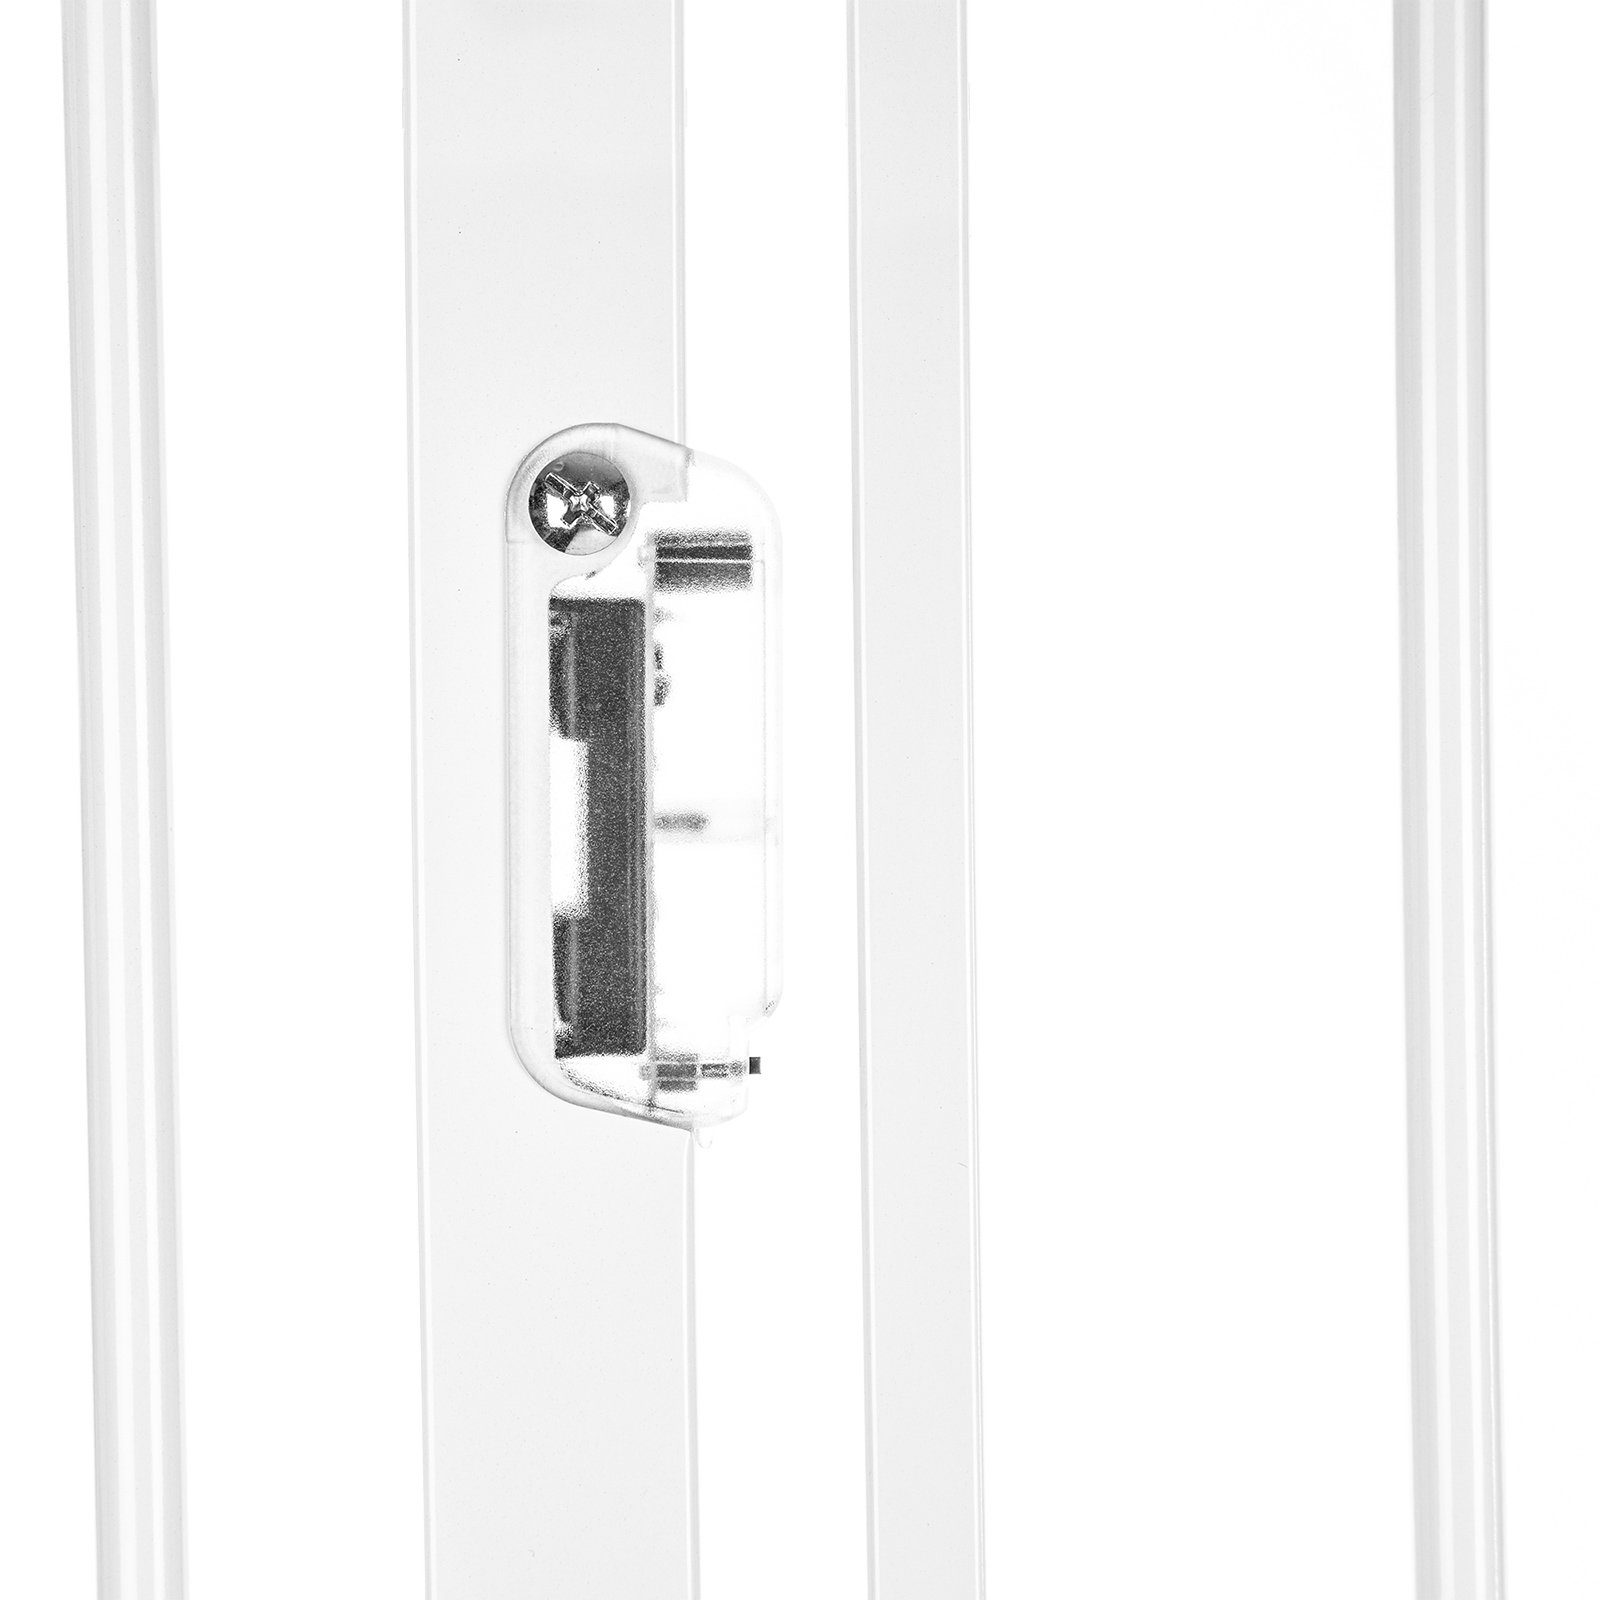 90° 75-105cm Truus lionelo Metall Türschutzgitter Bohren beidseitig Stop Led Slim LED-Weiss schwenkbar (TOP), und ohne